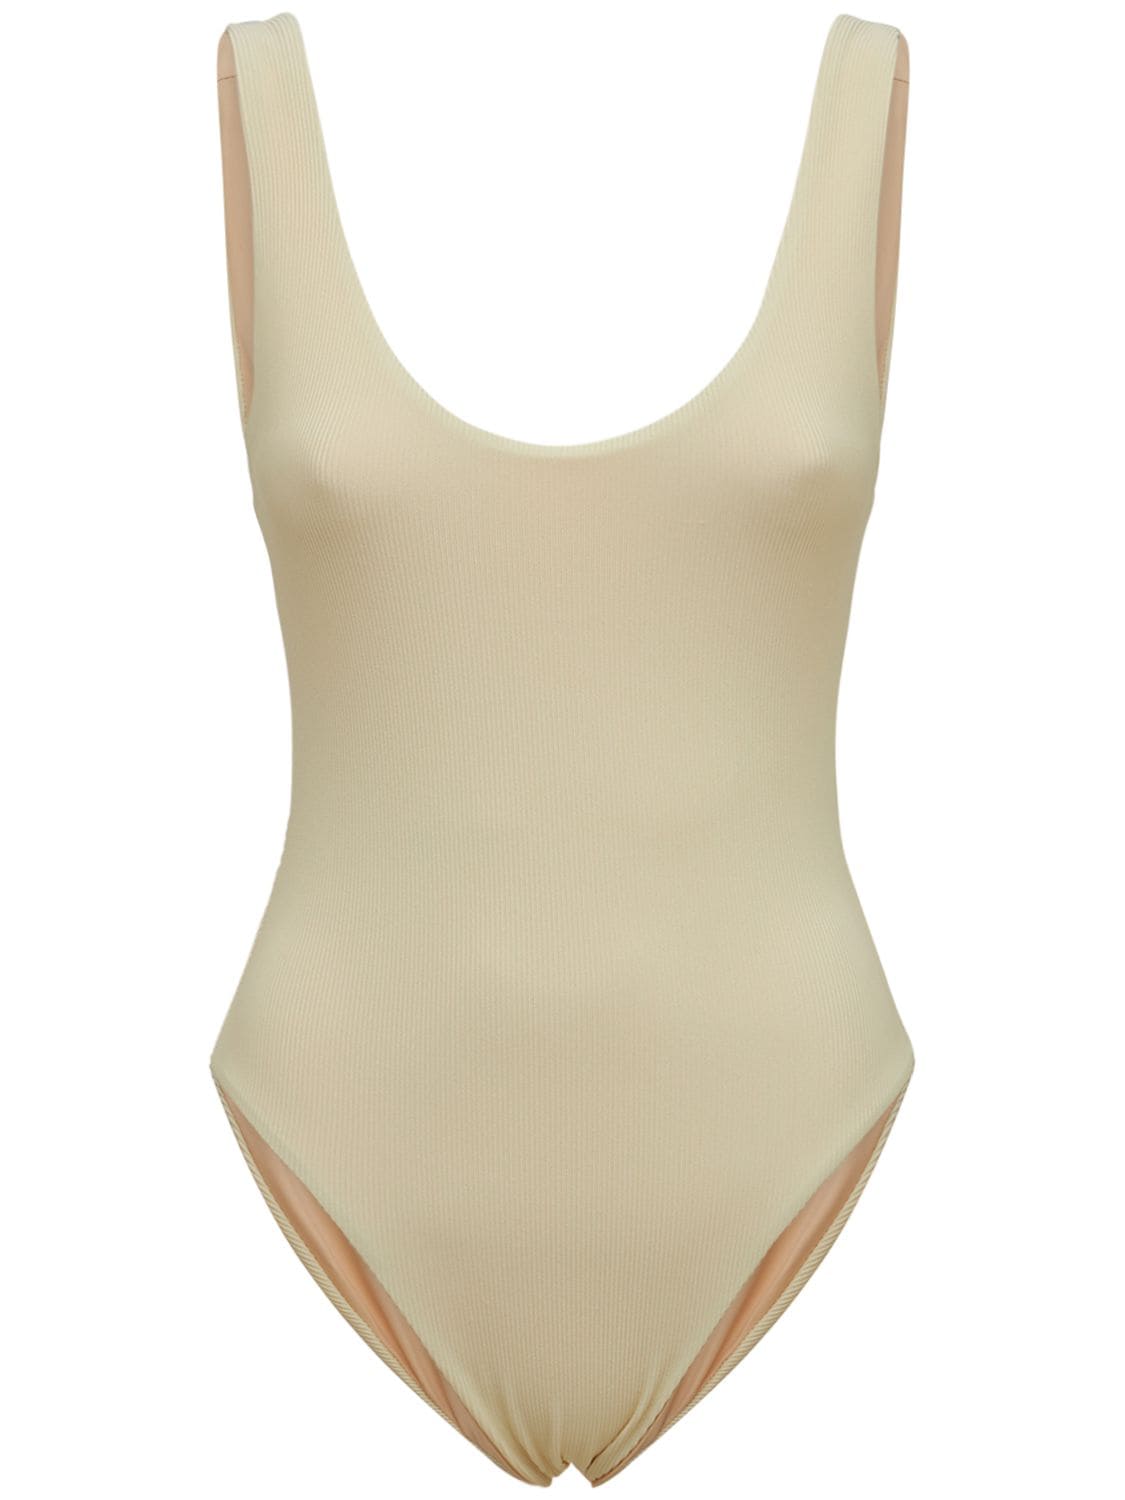 Jade Swim - Contour one piece swimsuit - Ivory | Luisaviaroma